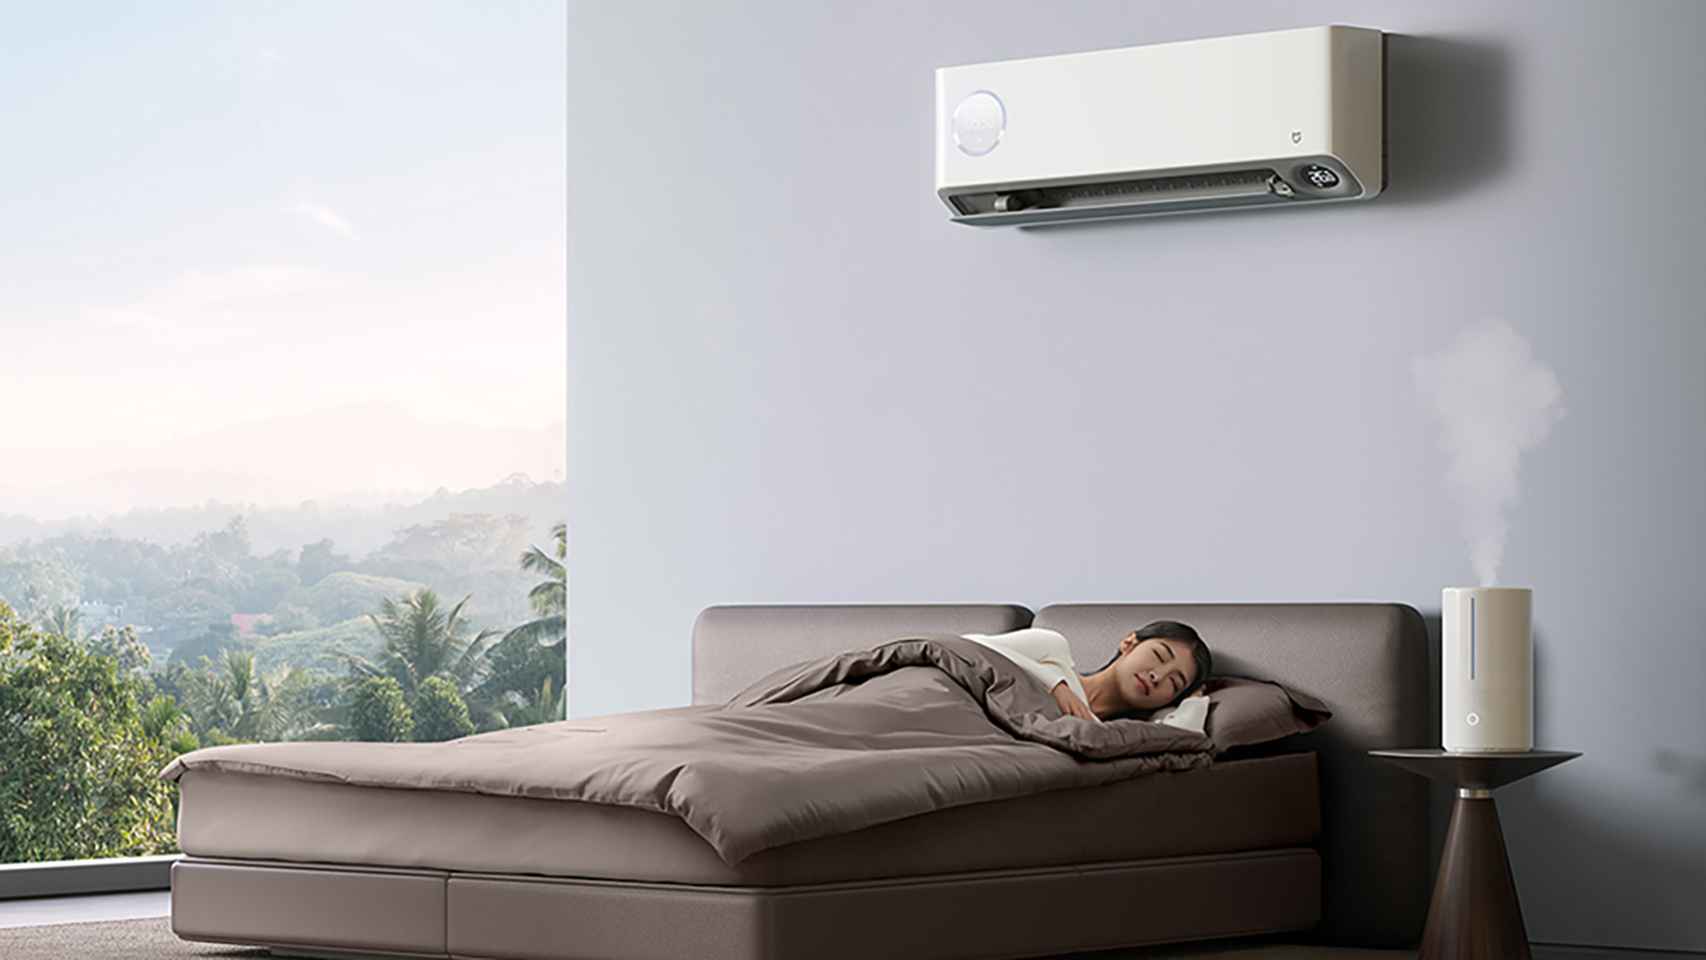 Transitorio Perth miseria Xiaomi tiene un aire acondicionado pequeño y barato para dormitorios